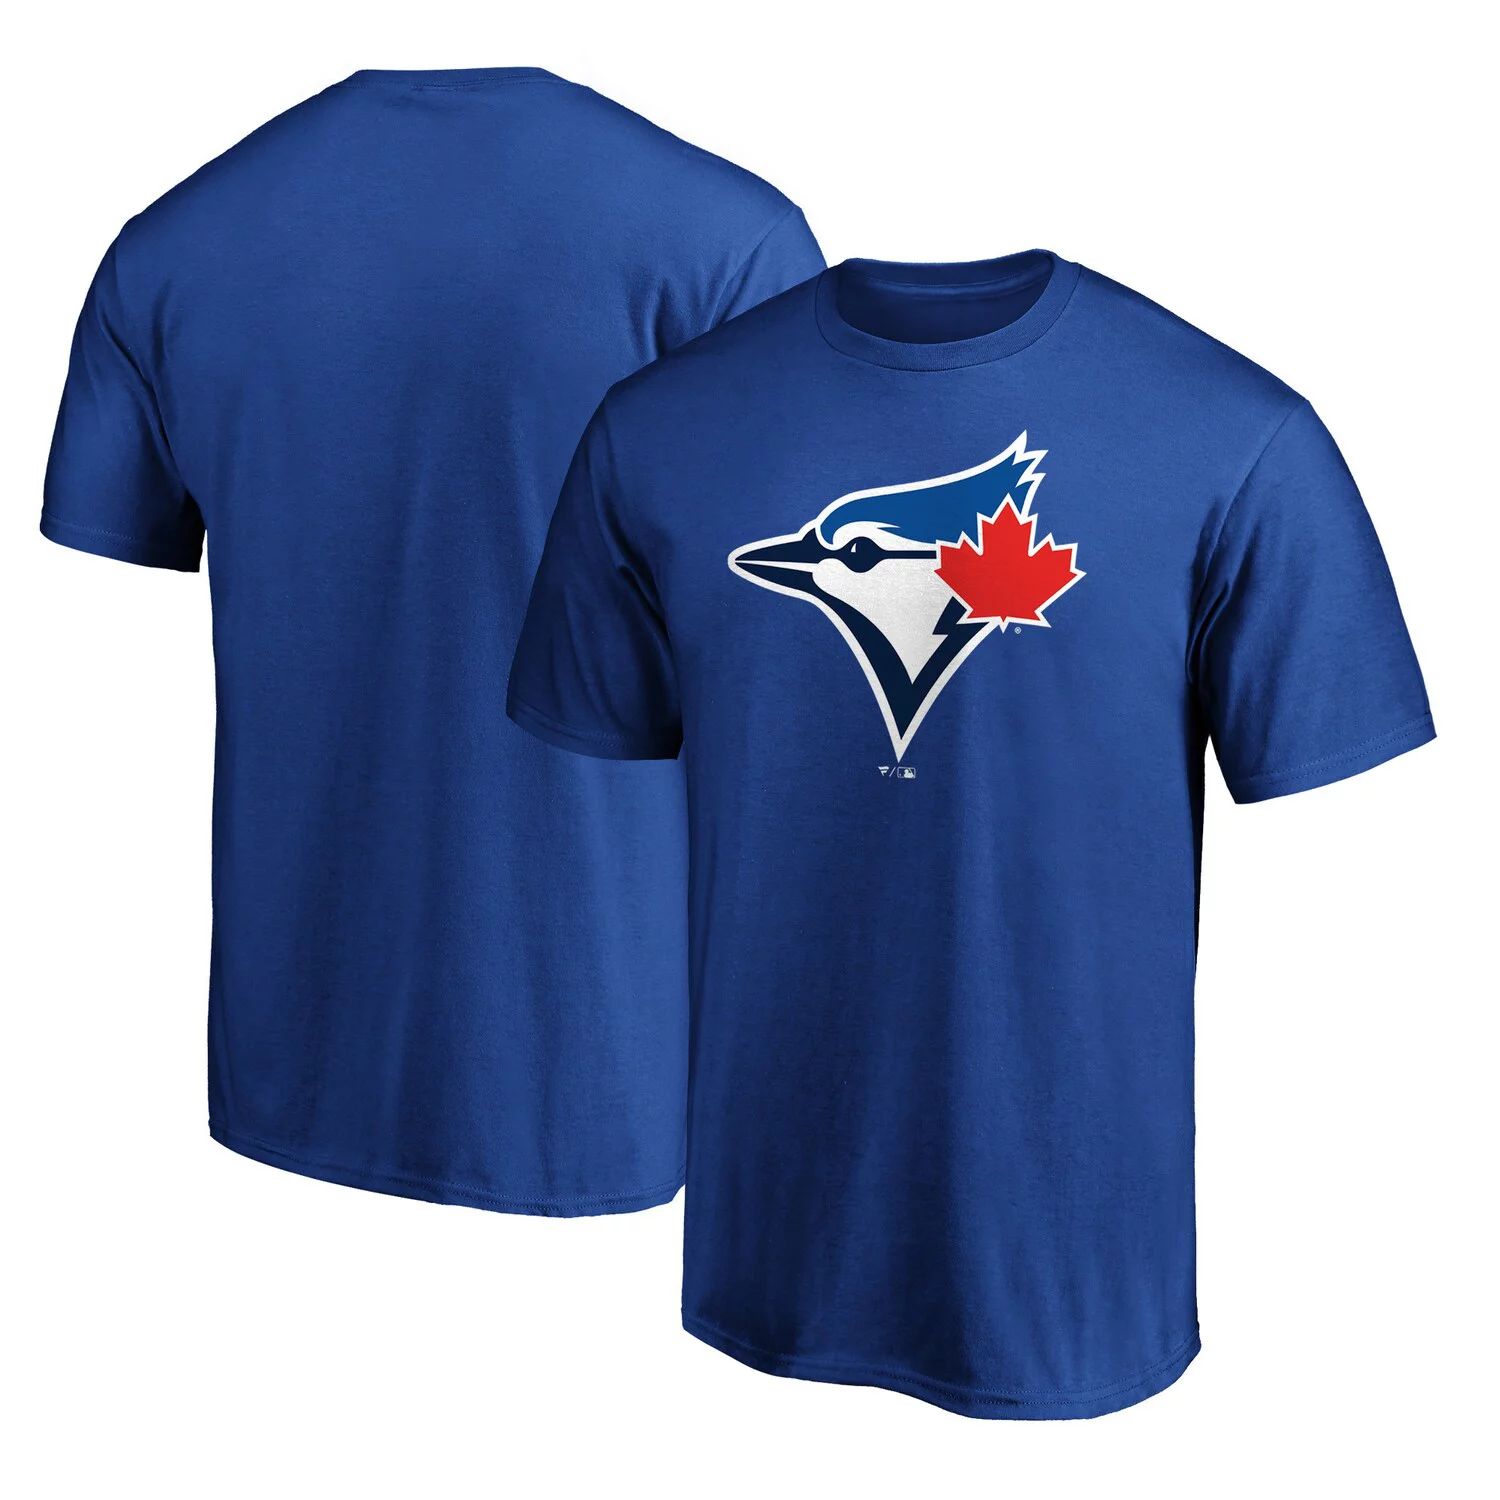 Мужская футболка с официальным логотипом Royal Toronto Blue Jays Fanatics